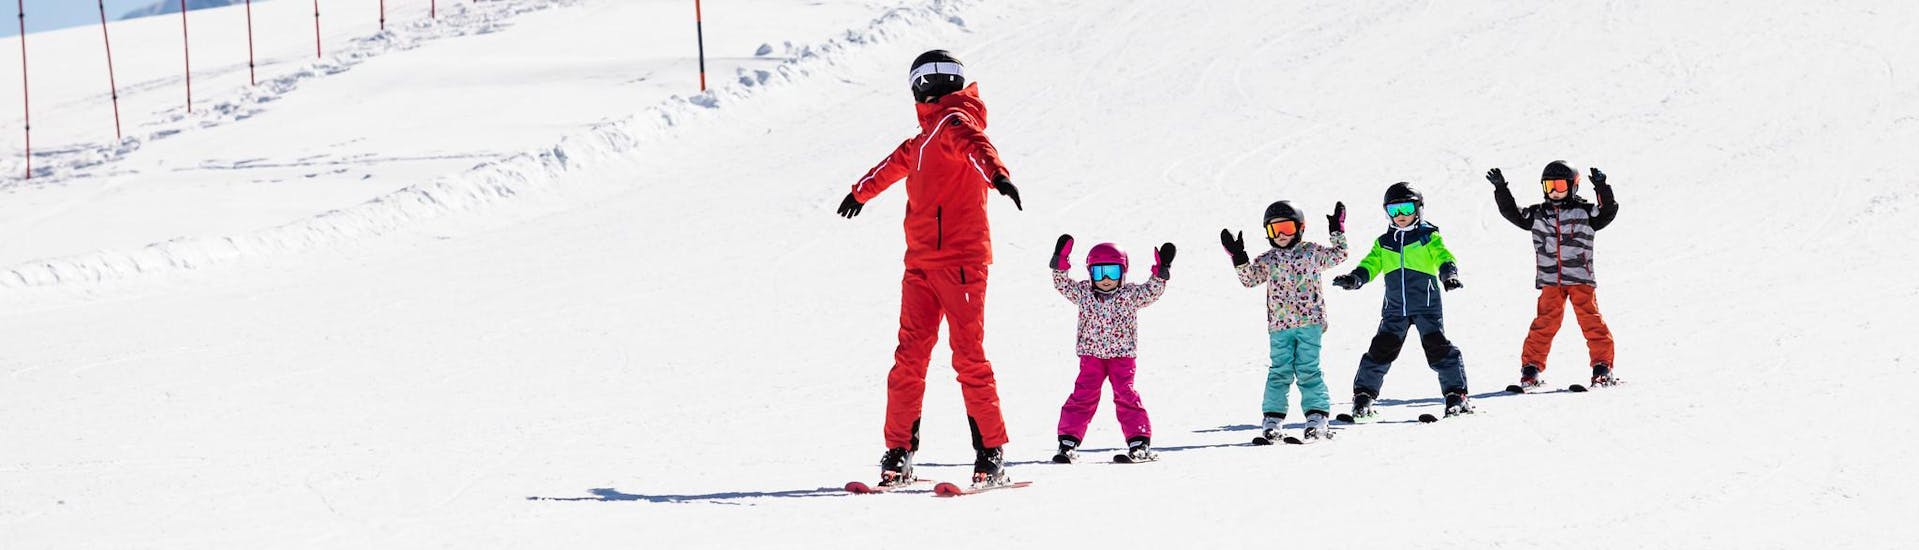 Moniteur de ski et enfants profitent d'une leçon de ski dans une école de ski près de Zurich.